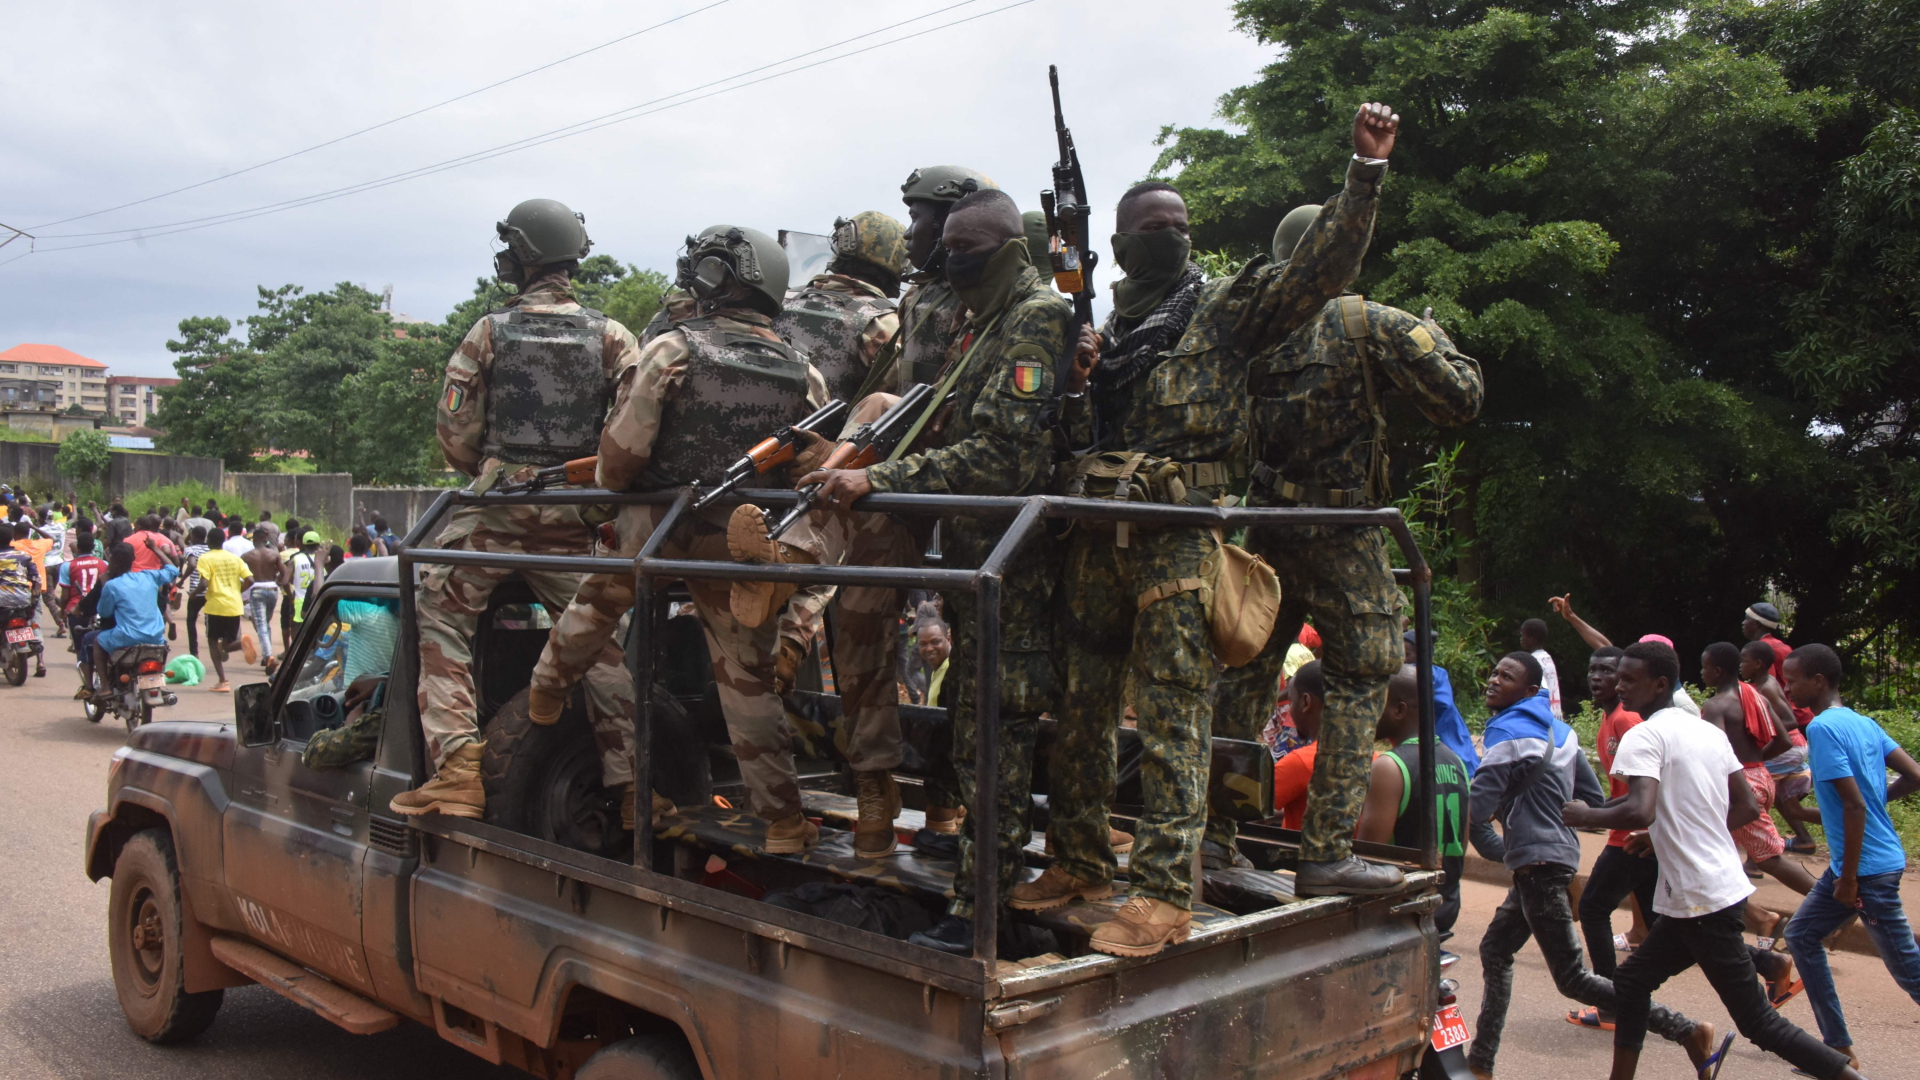 Soldaten feiern nach dem Putsch in Guinea | AFP